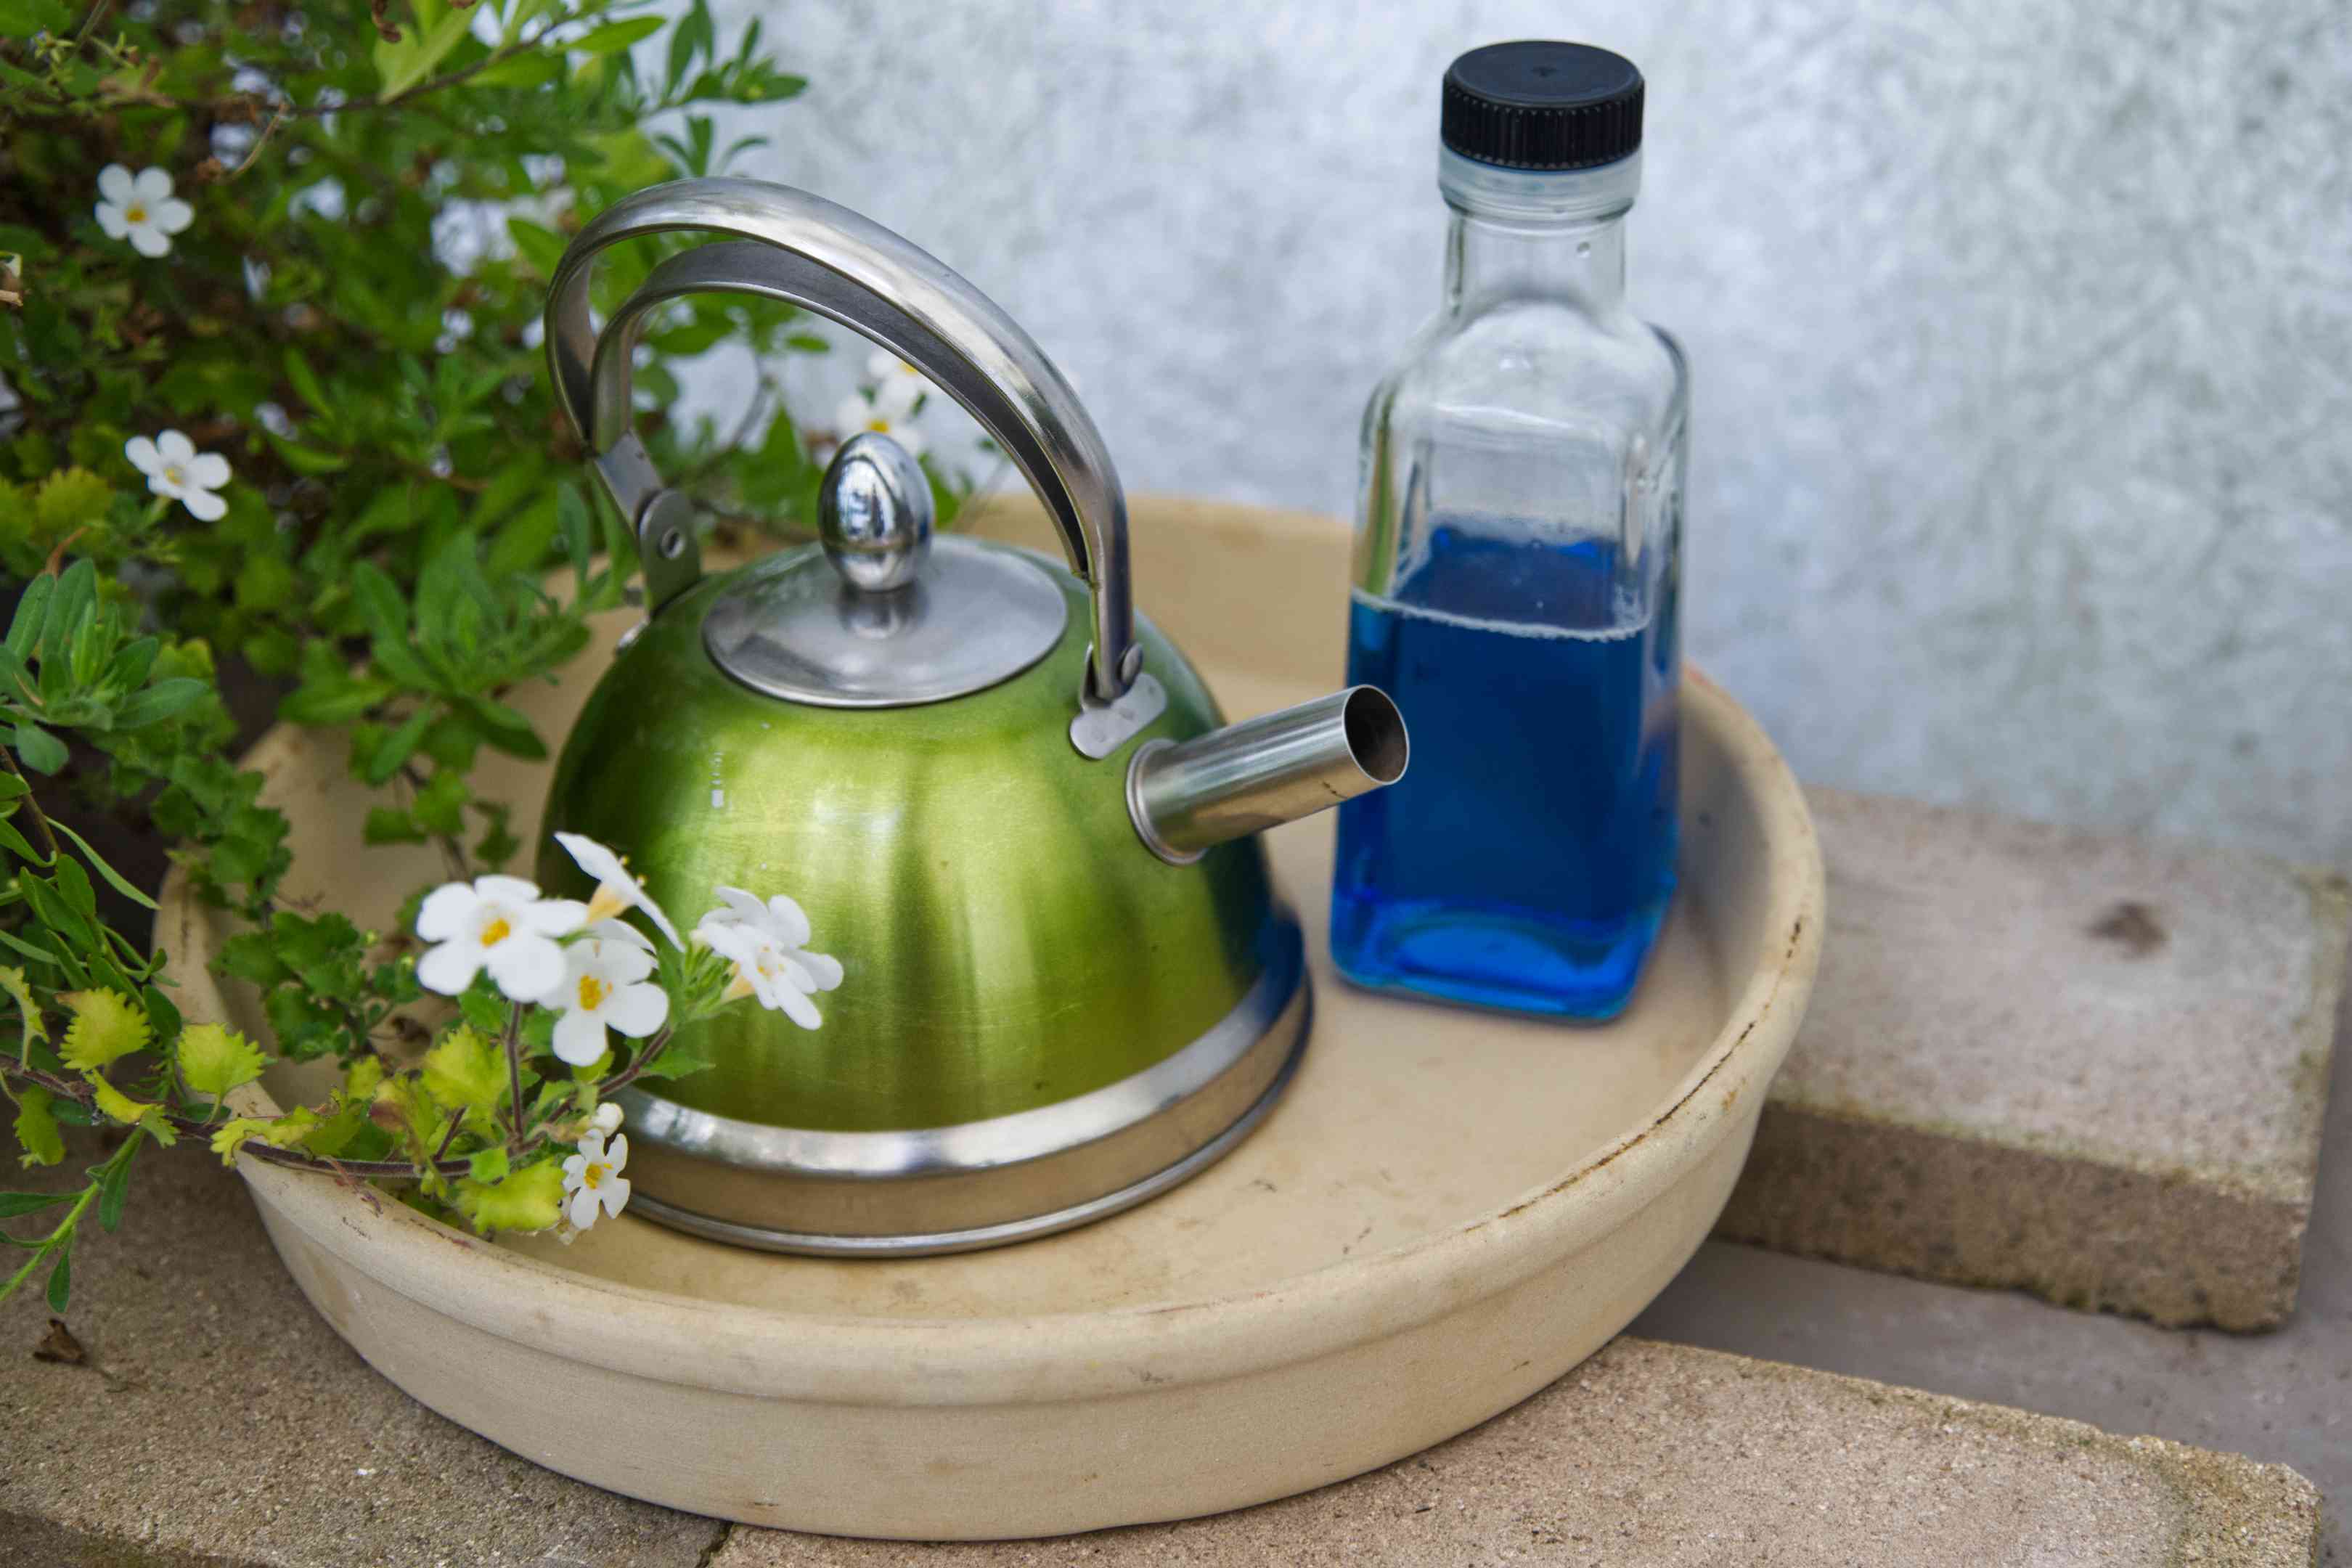 热水水壶和蓝色洗洁精在玻璃容器外面靠近花